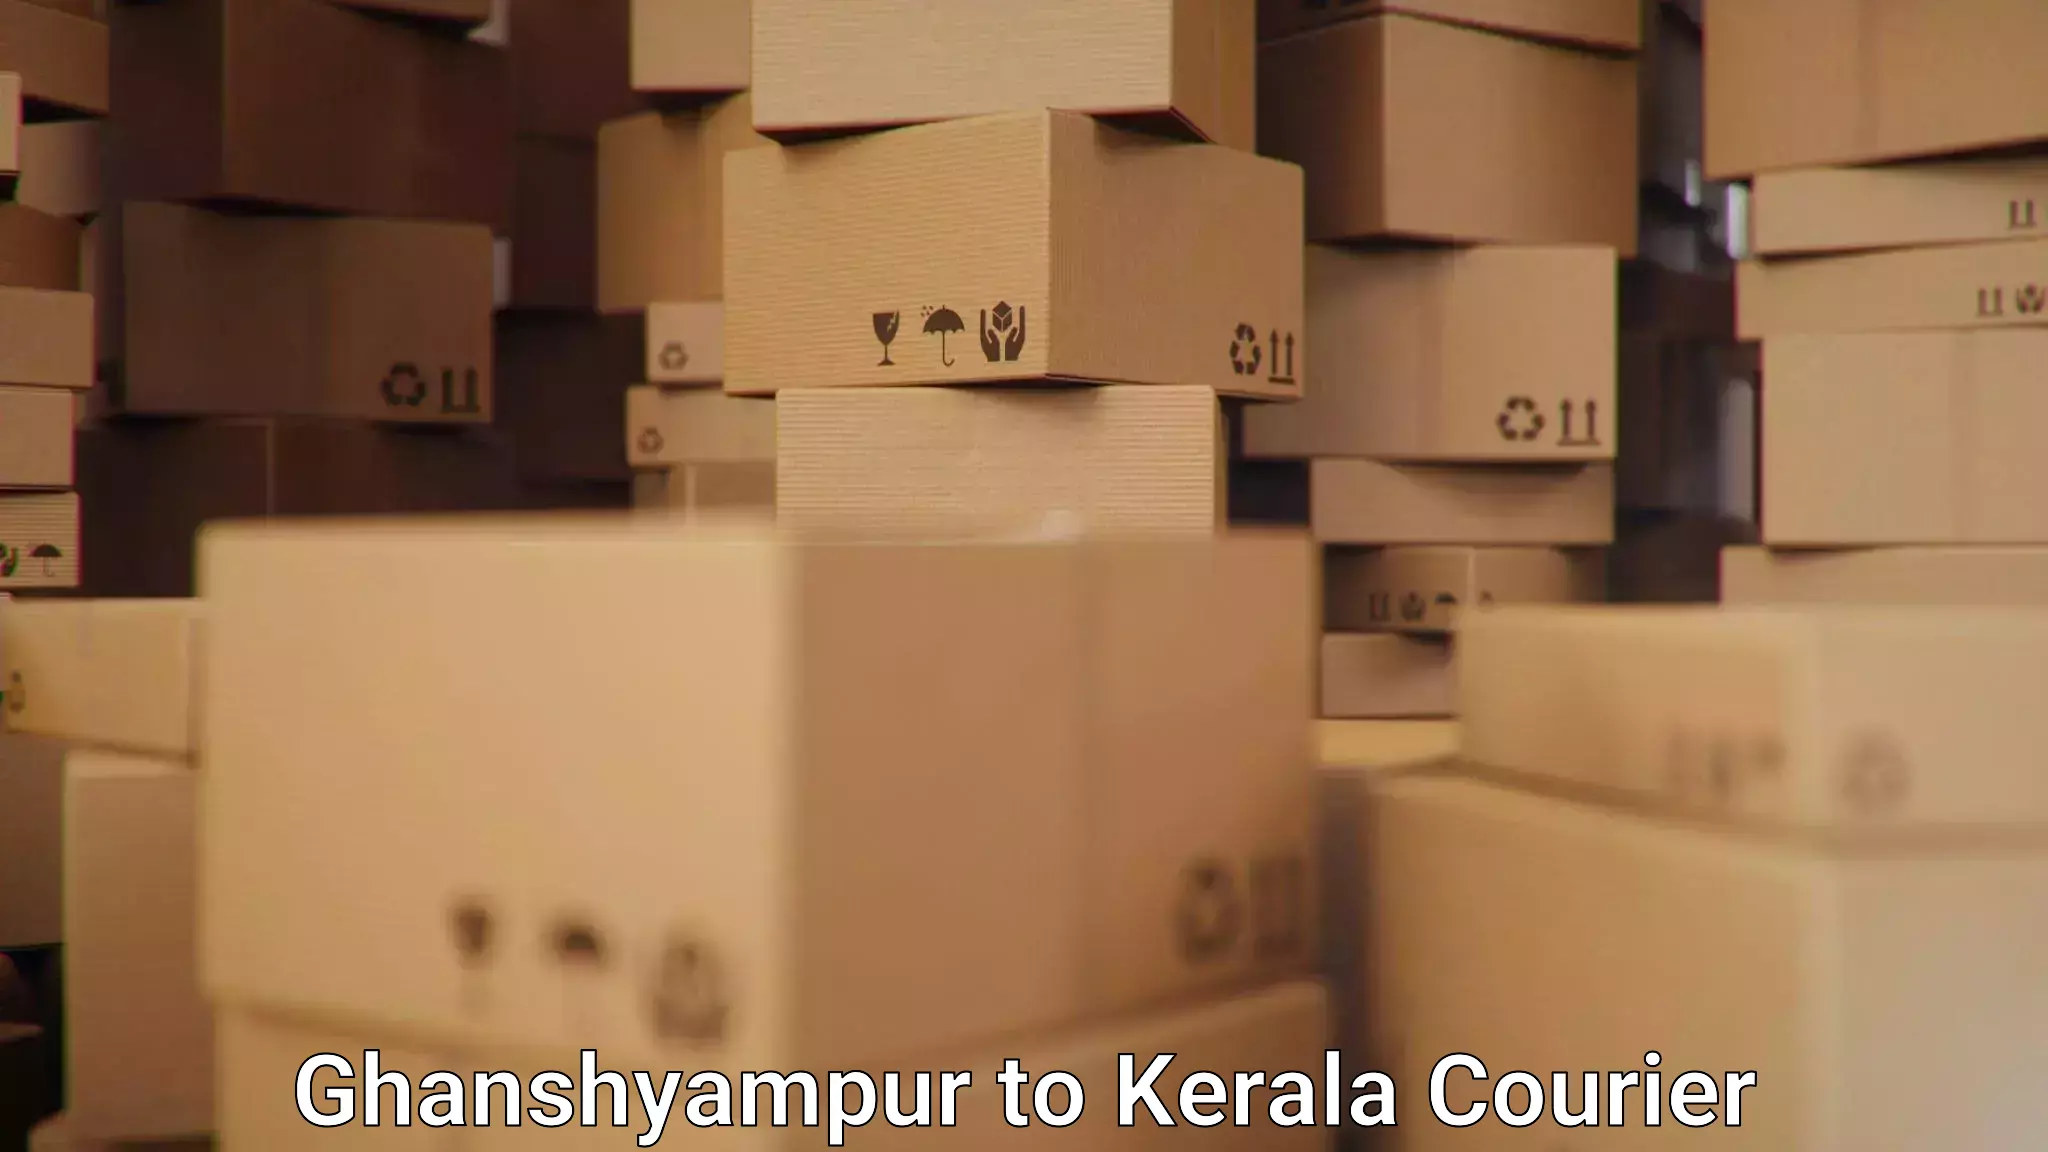 High-efficiency logistics Ghanshyampur to Karunagappally